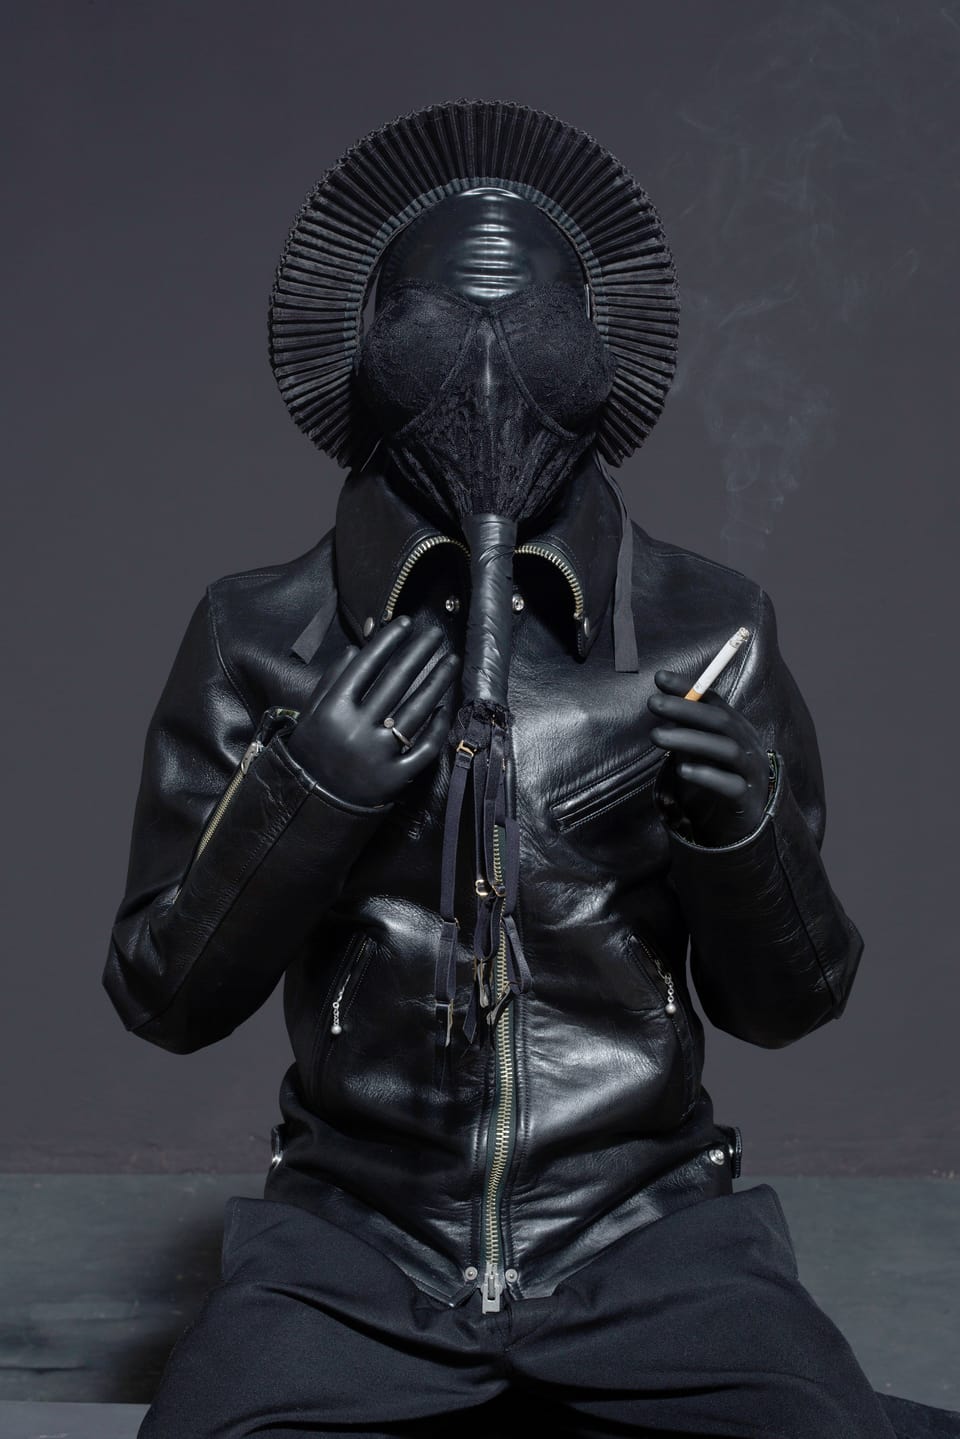 Eine ganz in schwarz mit schwarzer Maske bekleidete Person, die eine Zigarette raucht.